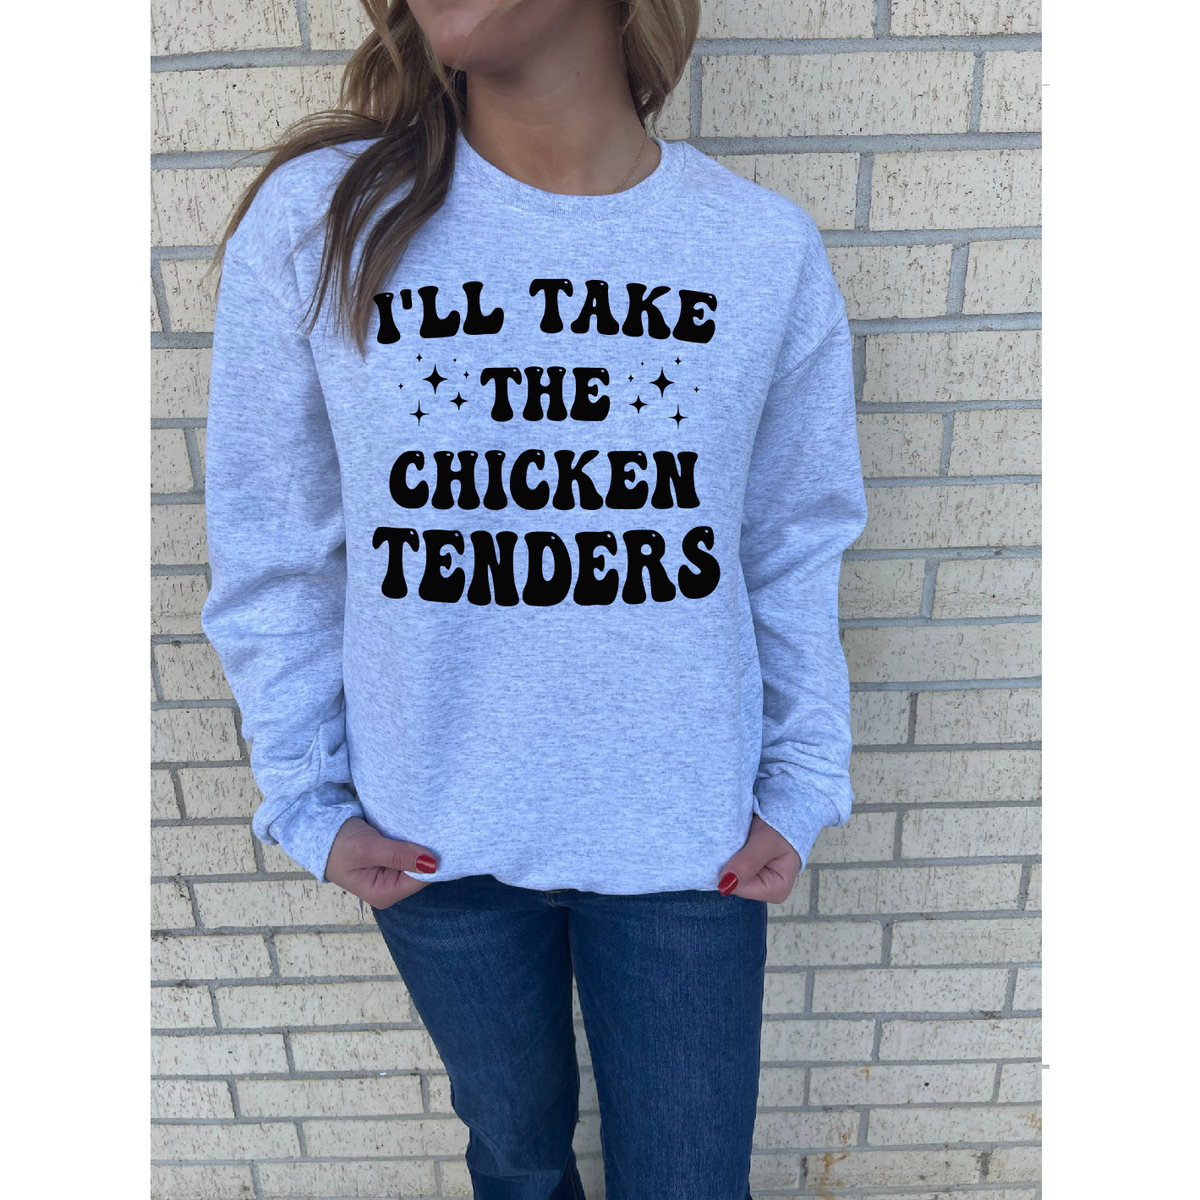 Chicken Tenders Tee or Sweatshirt